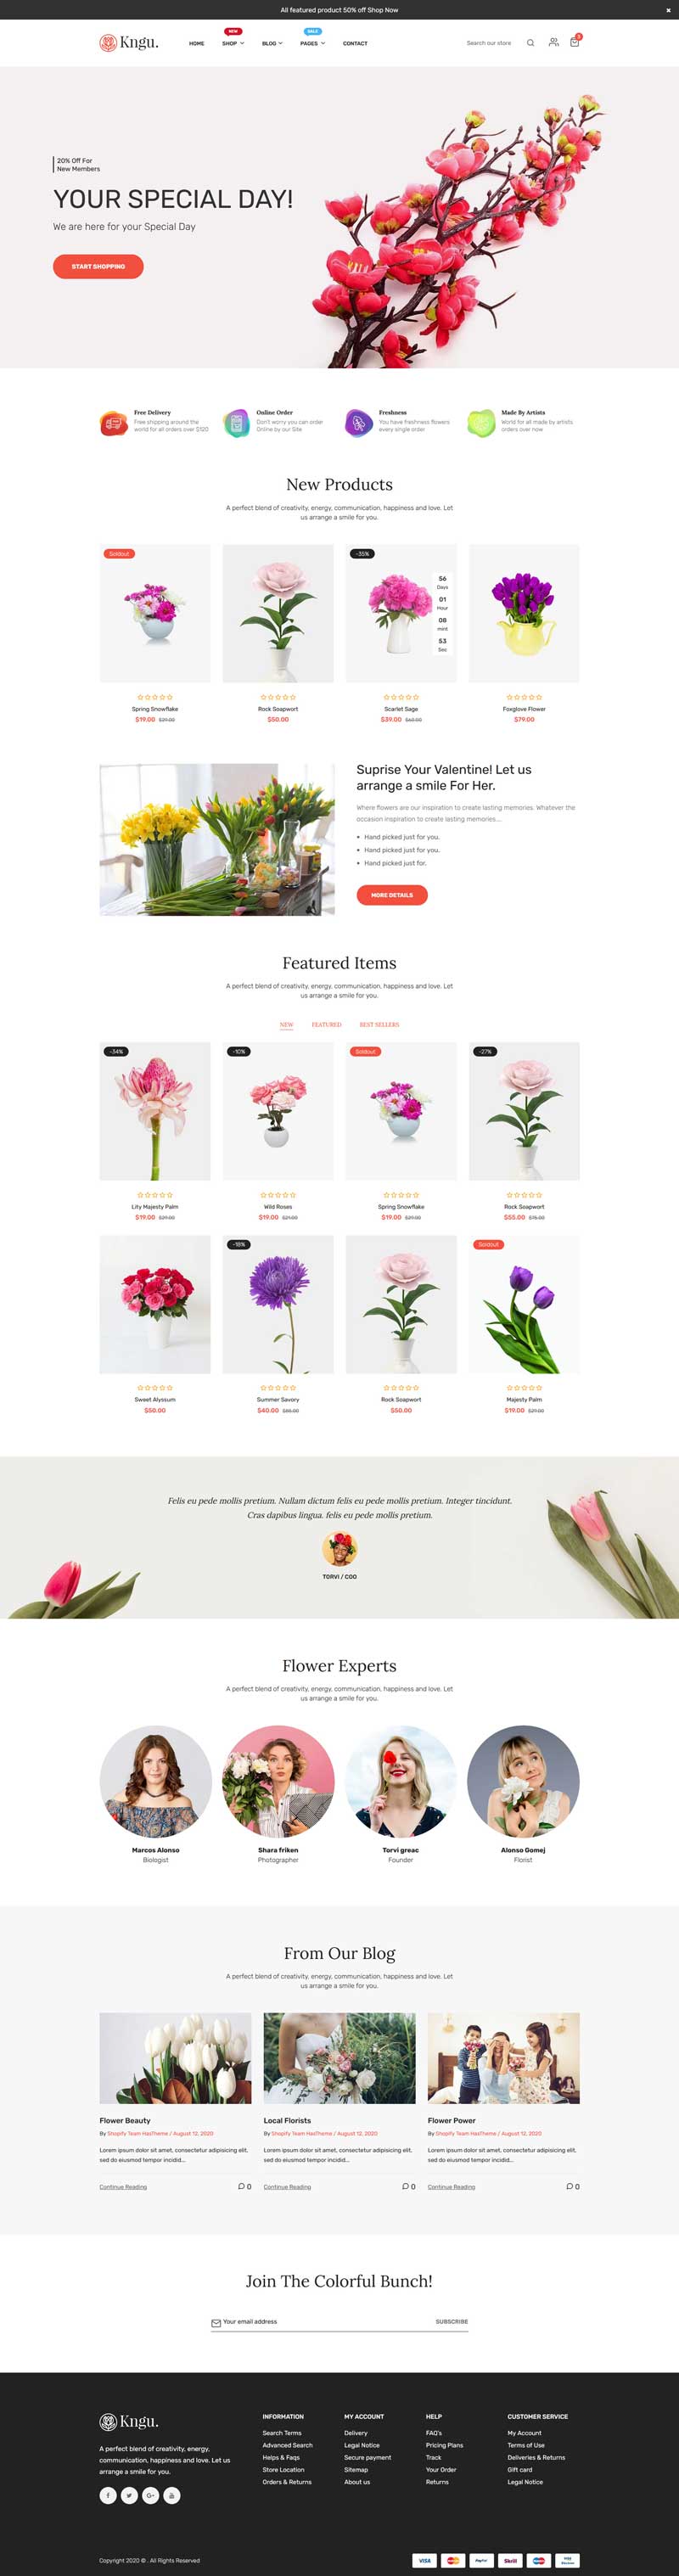 网上鲜花店铺电商网站html5模板